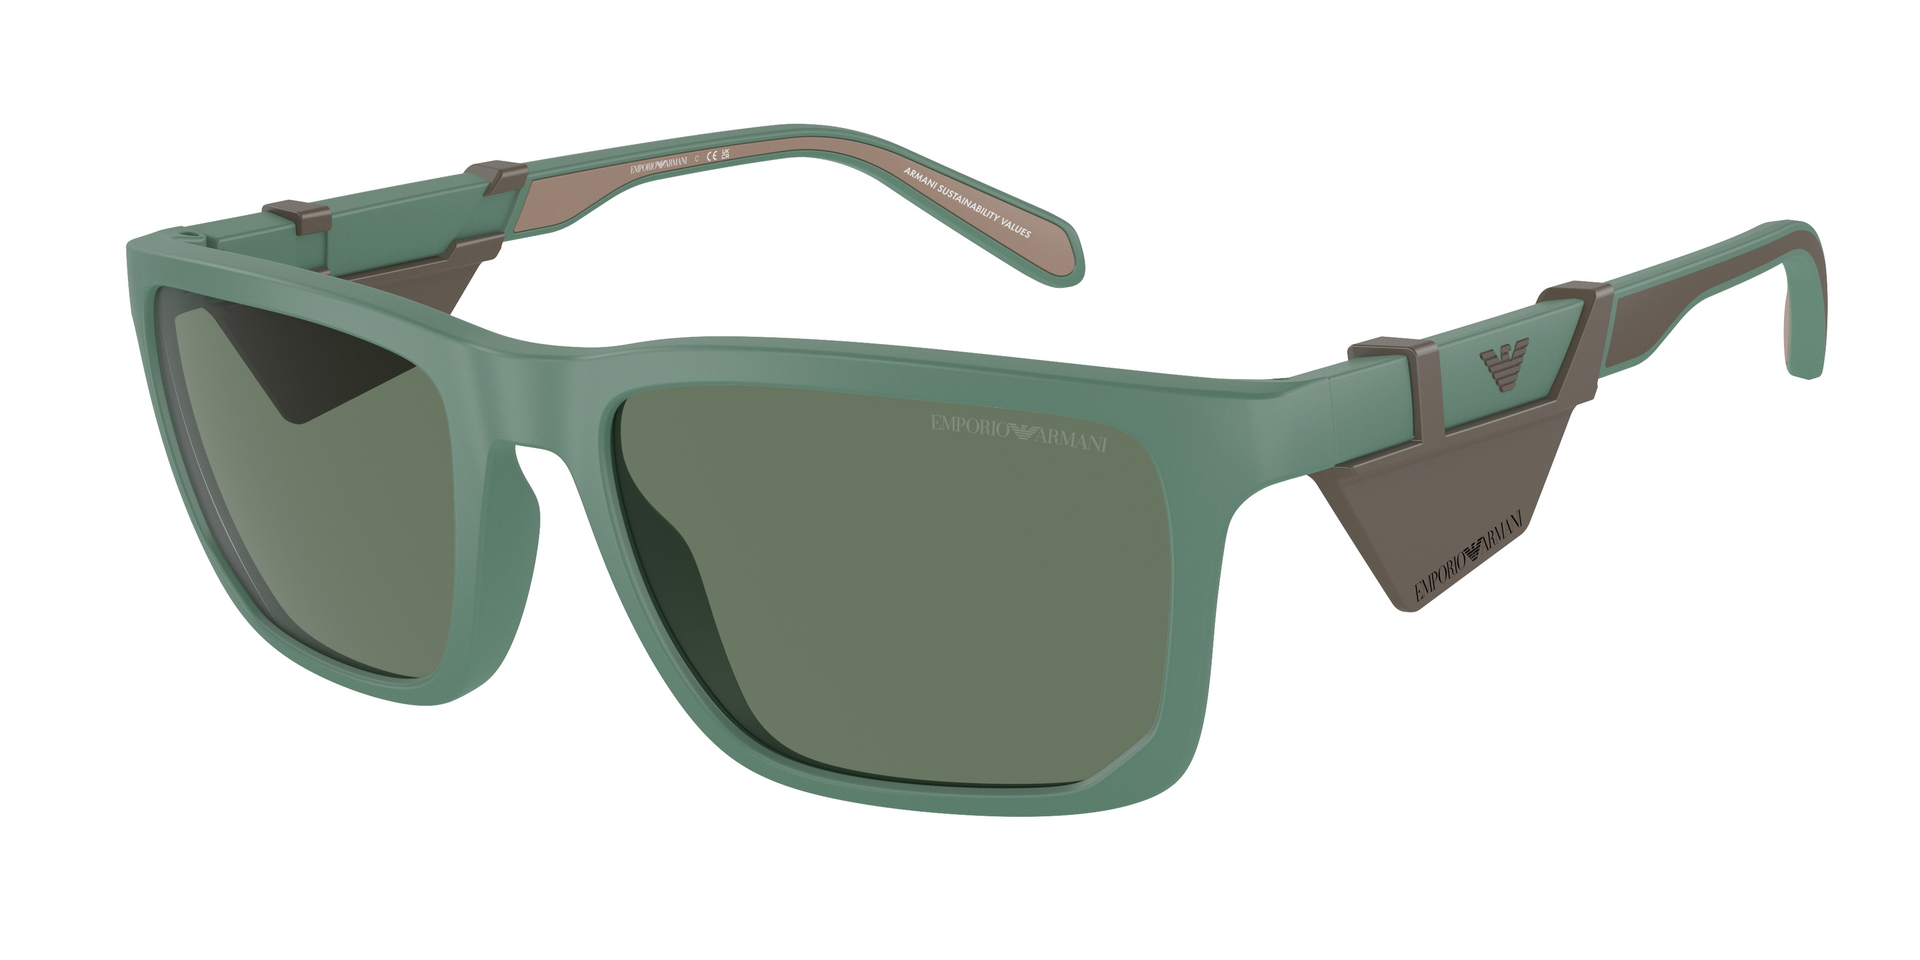 Das Bild zeigt die Sonnenbrille EA4219 610276 von der Marke Emporio Armani in Matt grün.